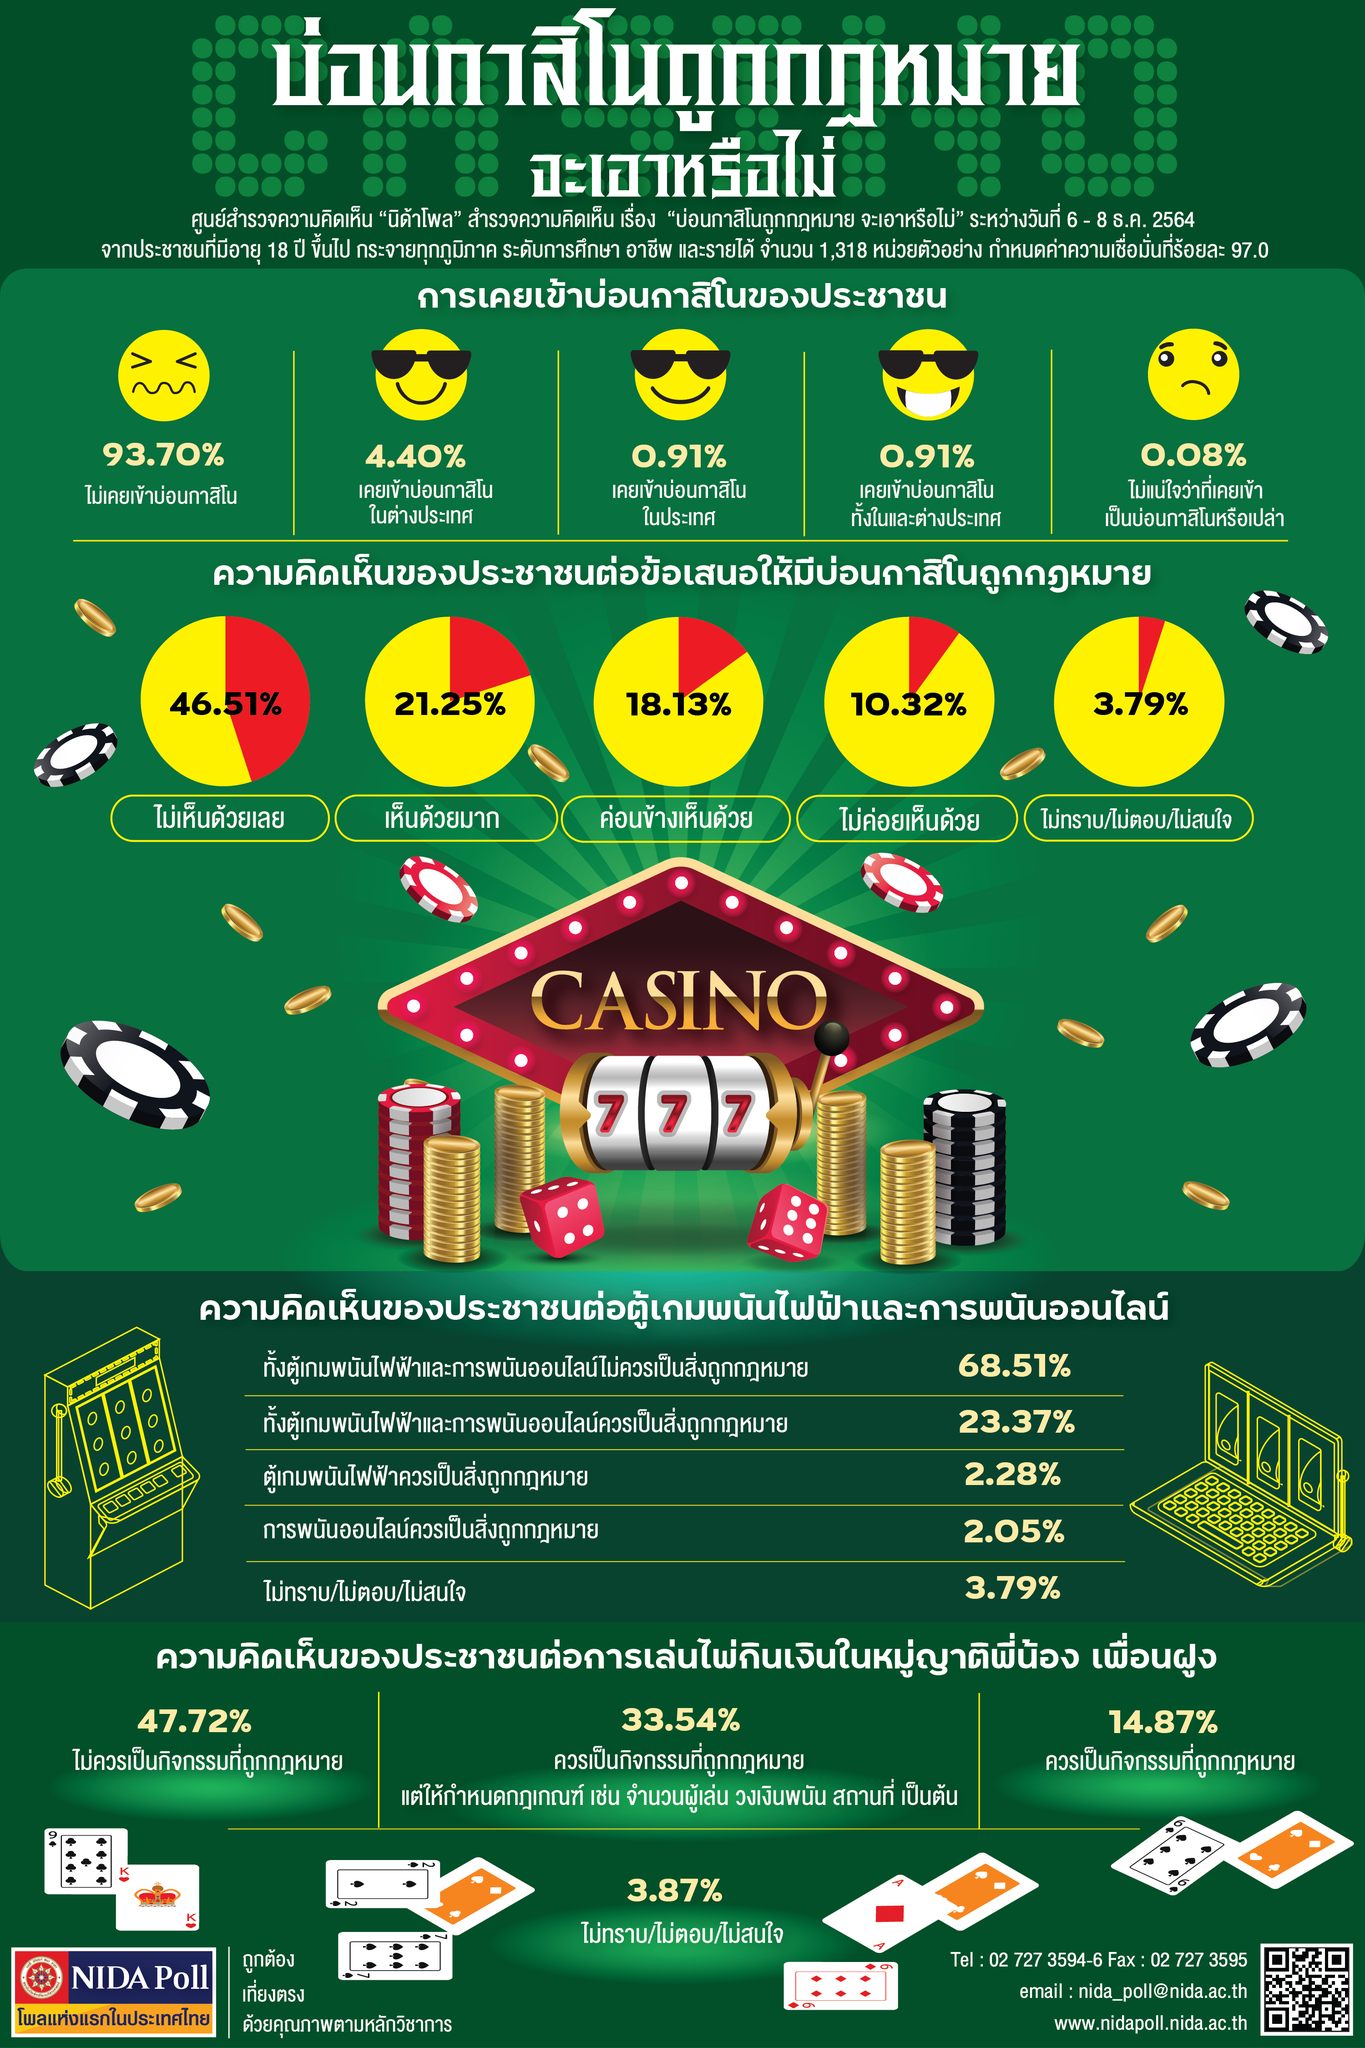 タイでのカジノ合法化、過半数が反対【世論調査】